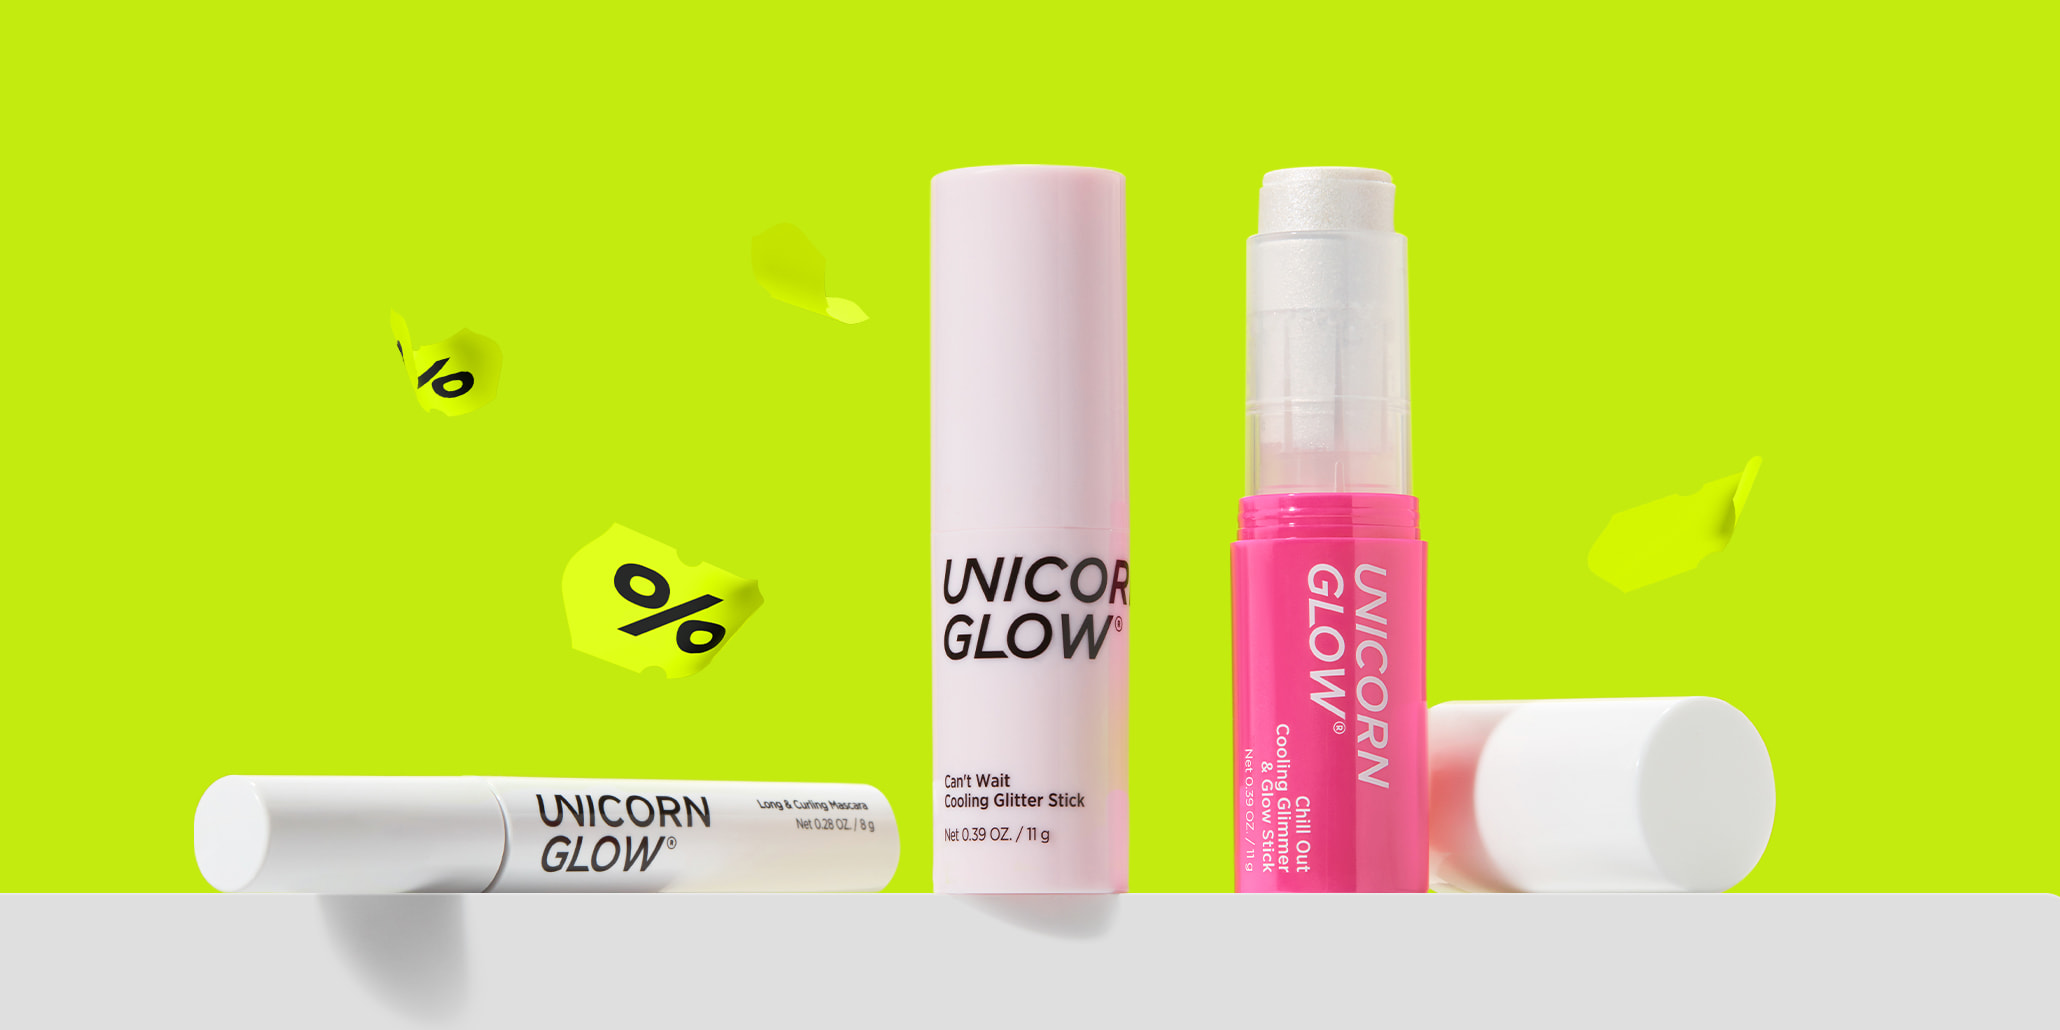 Unicorn Glow −25%